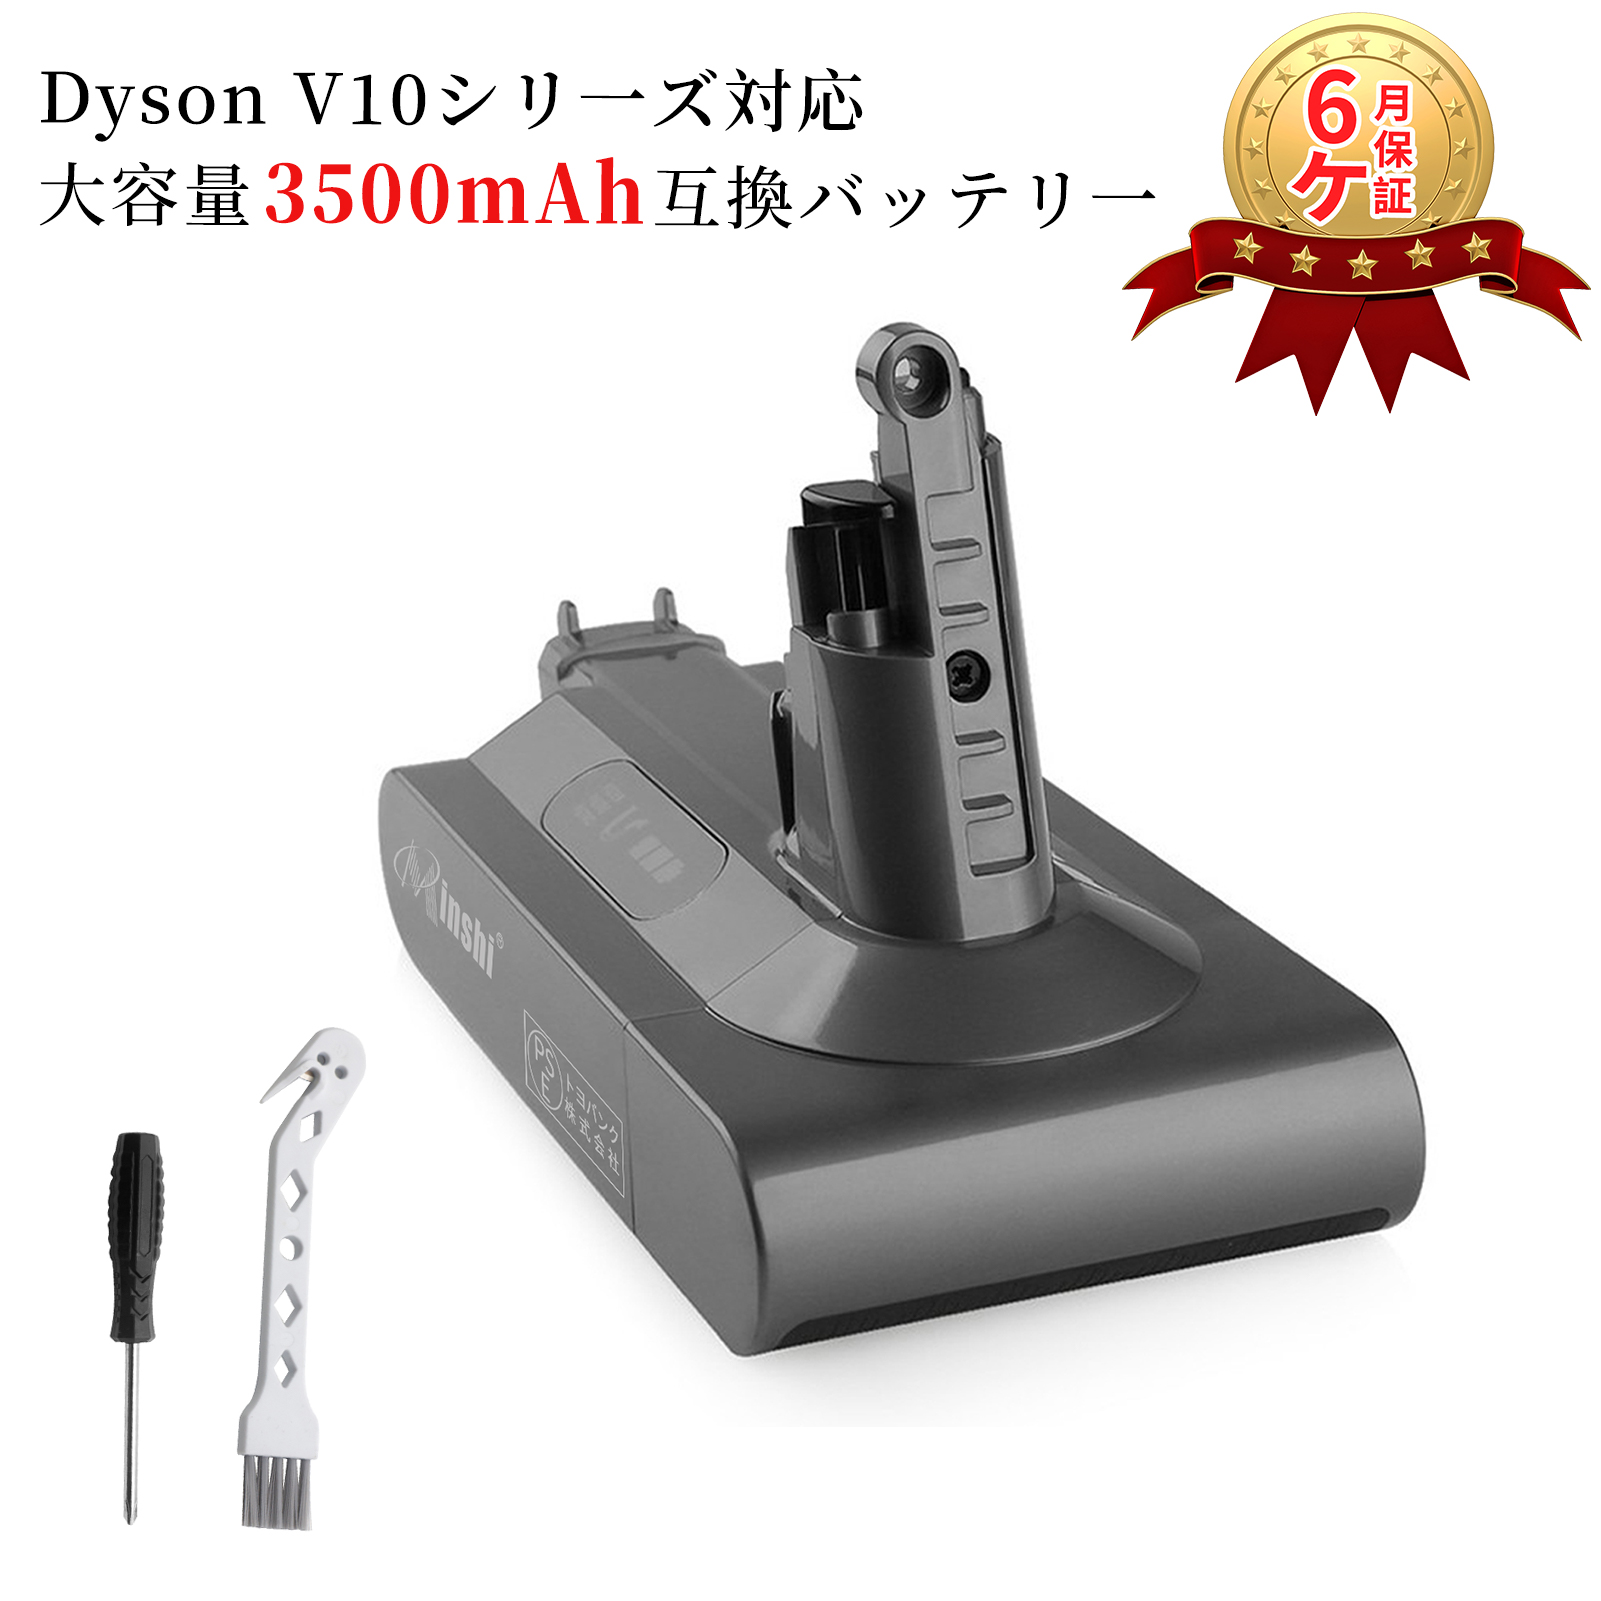 [minshi] ダイソン dyson V10 SV12 互換バッテリーWHH Dyson V10 Absolute 対応 25.2V 4.0Ah バッテリー 送付属 ツール